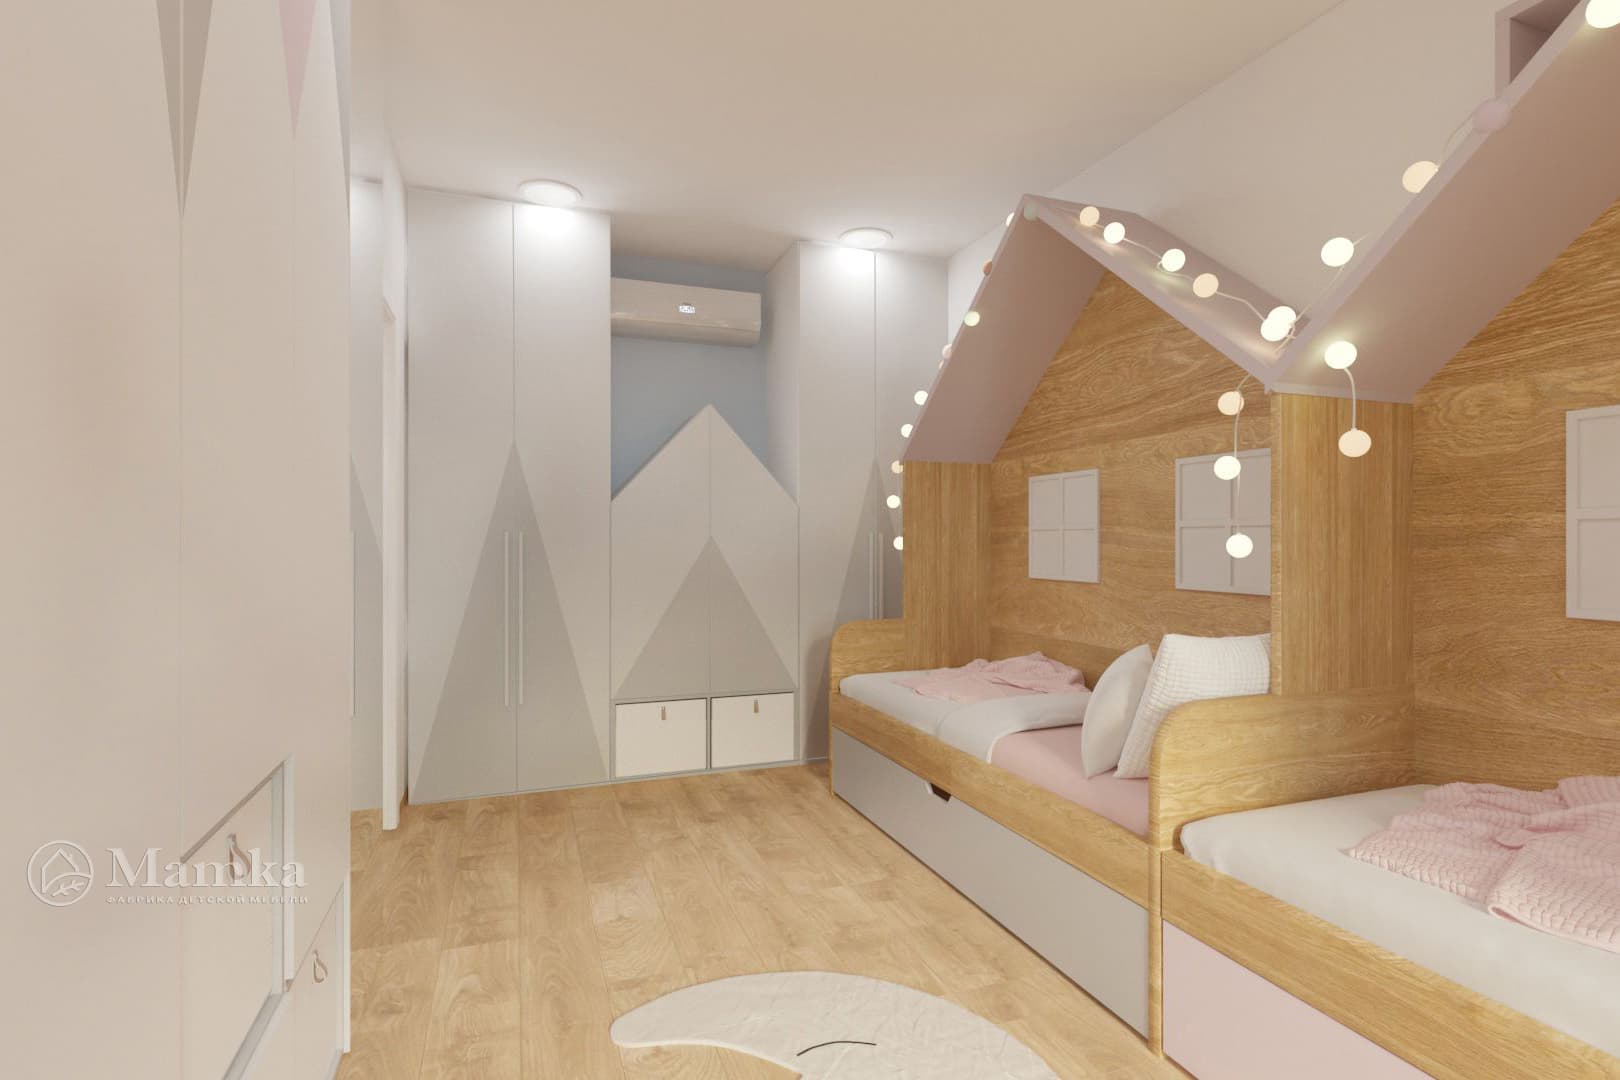 Прямоугольная комната дизайн спальни